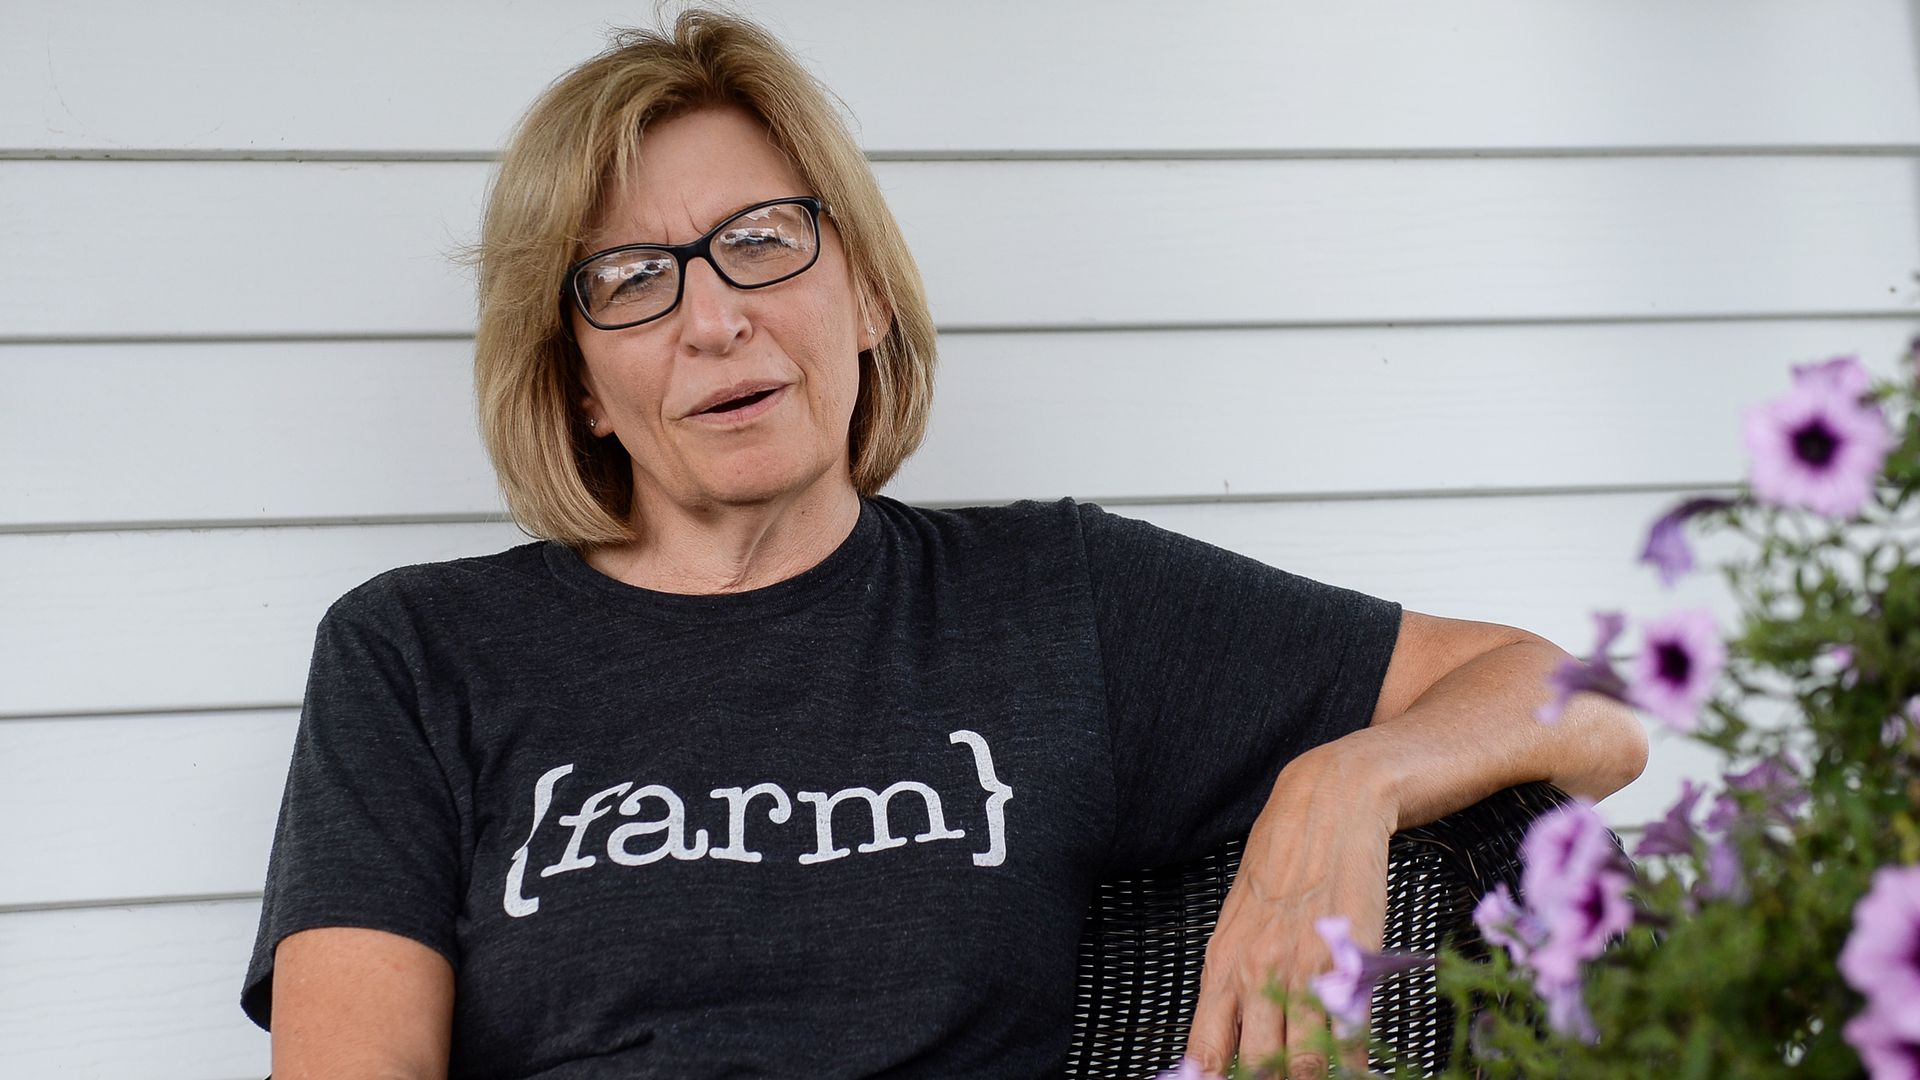 Rita Hart wears a shirt that says "farm" 